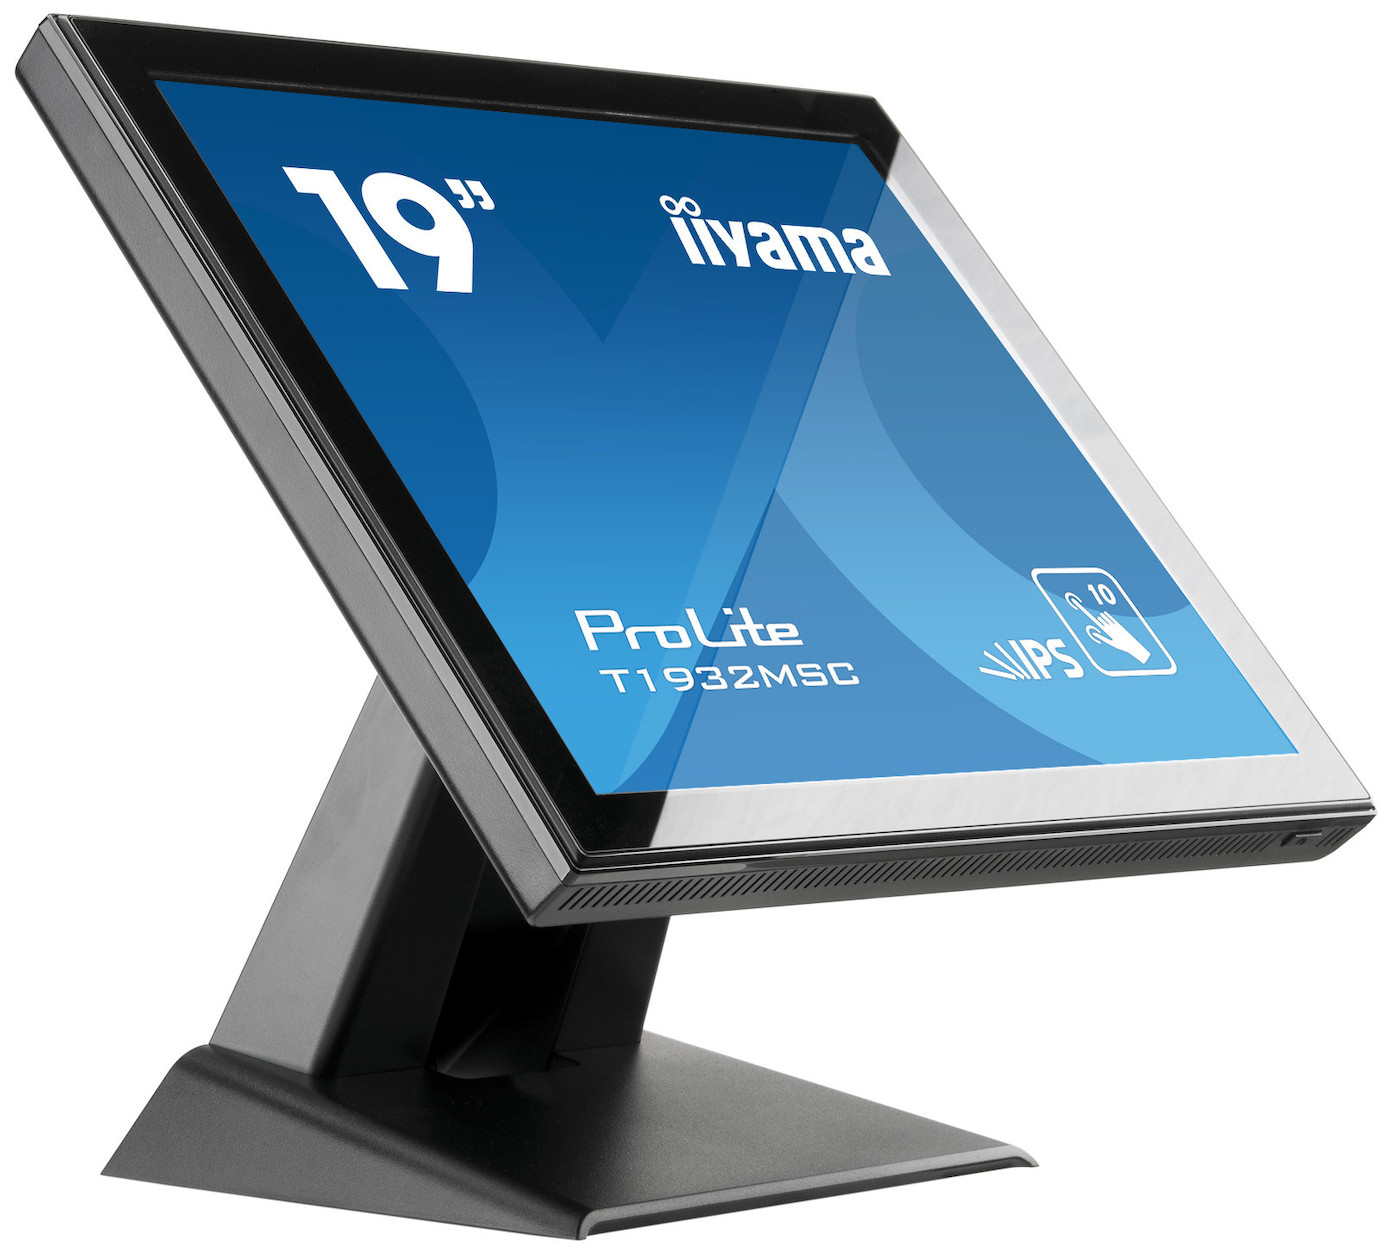 Vorschau: iiyama T1932MSC-B5X 19" LCD Monitor mit SXGA und 14ms Reaktionszeit